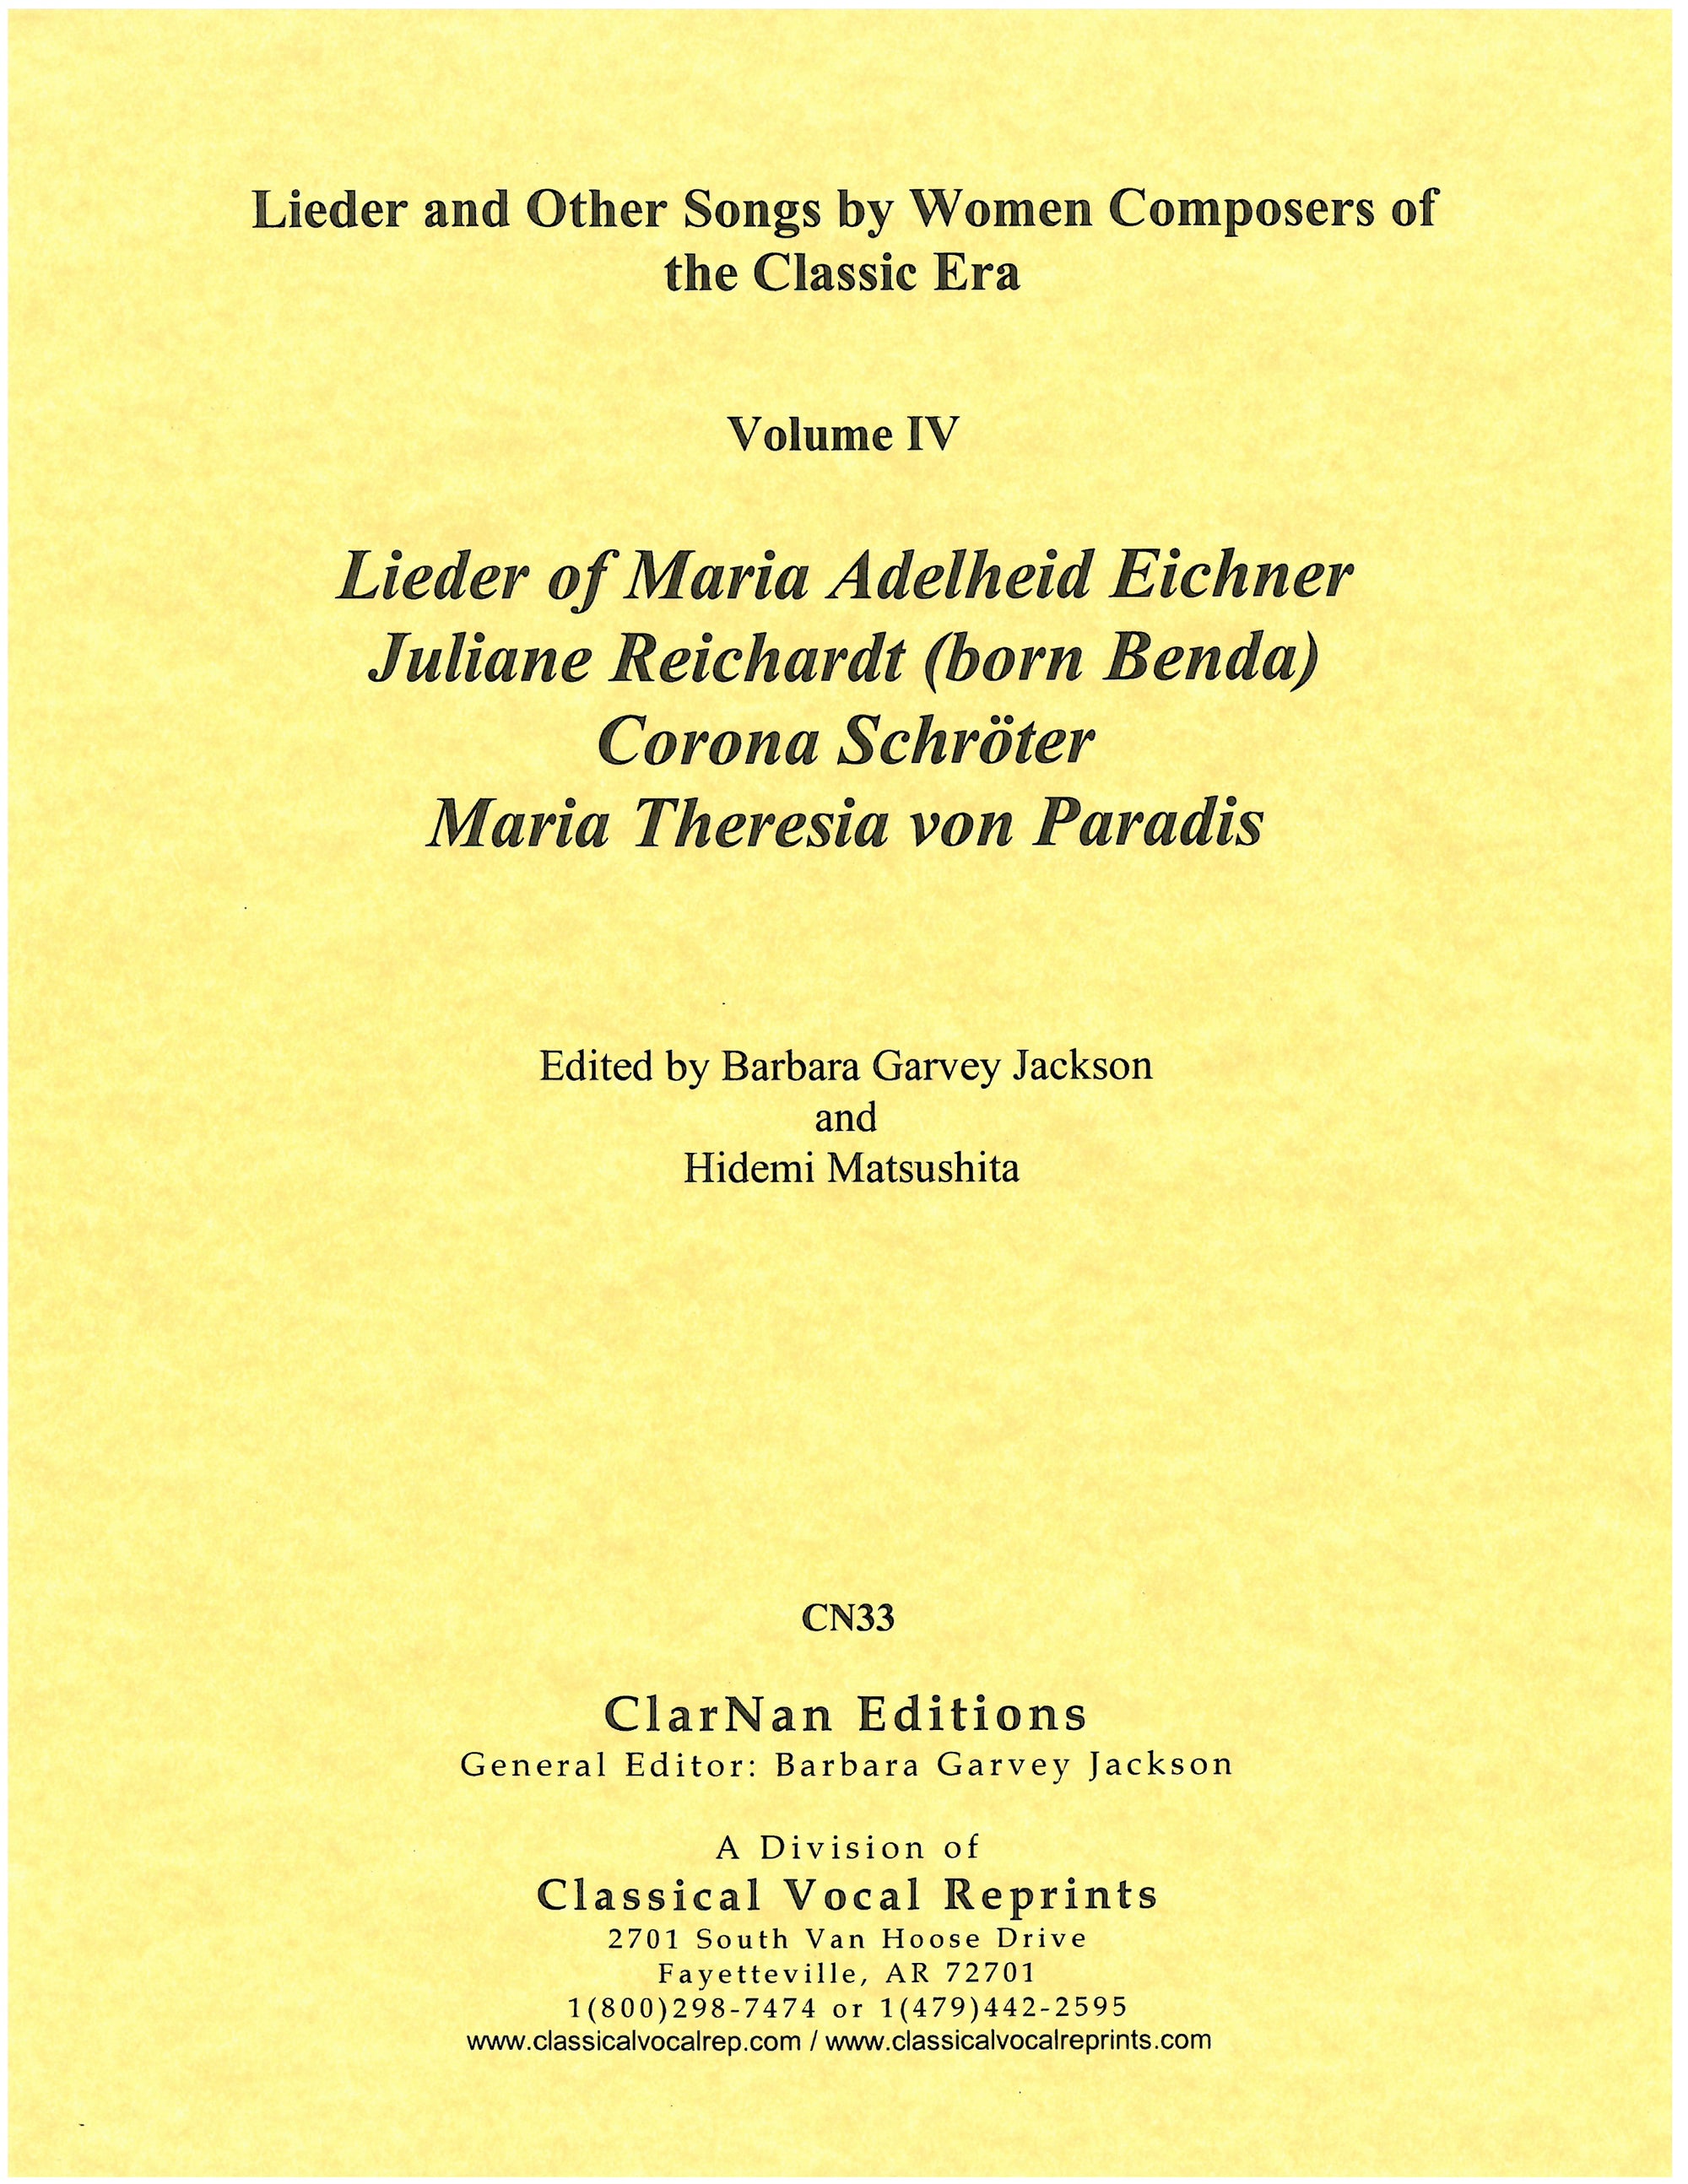 Lieder of Adelheid Maria Eichner, Juliane Reichartdt, Corona Schröter and Maria Theresia von Paradis